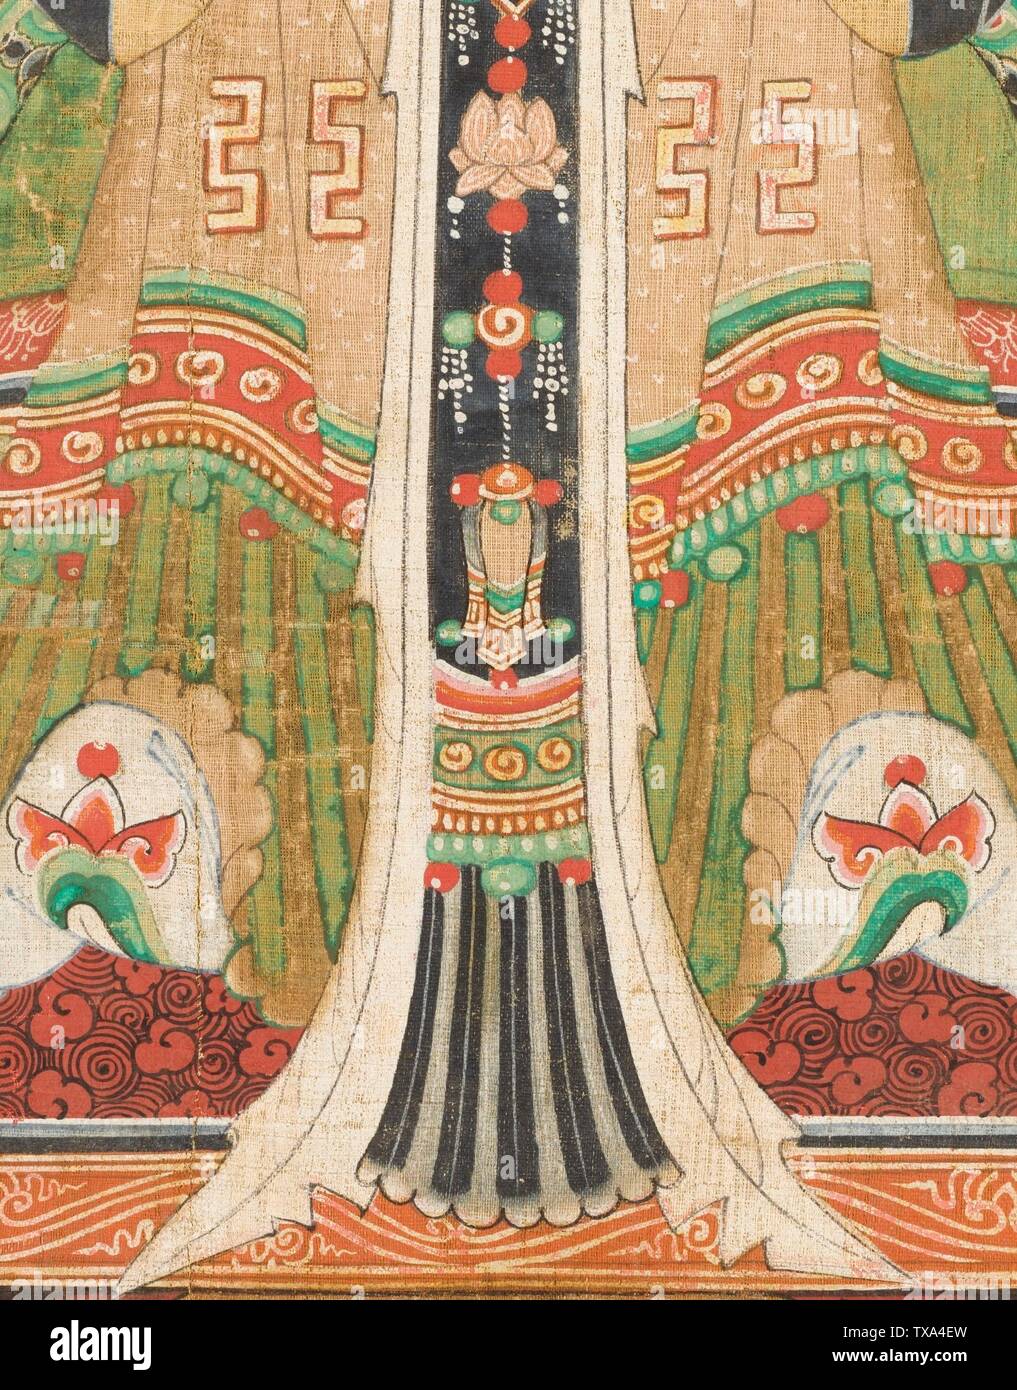 Nambang Yeomje (Nanfang Yendi), seigneur du quadrant sud (image 2 de 4); Corée, Coréen, dynastie Joseon (1392-1910), Tableaux du XVIIIe siècle Panneau, encre et couleur sur le chanvre ou la ramie image: 39 3/4 x 29 po. (100.97 x 73.66 cm) Acheté avec les fonds du Musée (M.97 0.15.10) Art coréen; date du XVIIIe siècle QS:P571,+1750-00-00T00:00:00Z/7; Banque D'Images